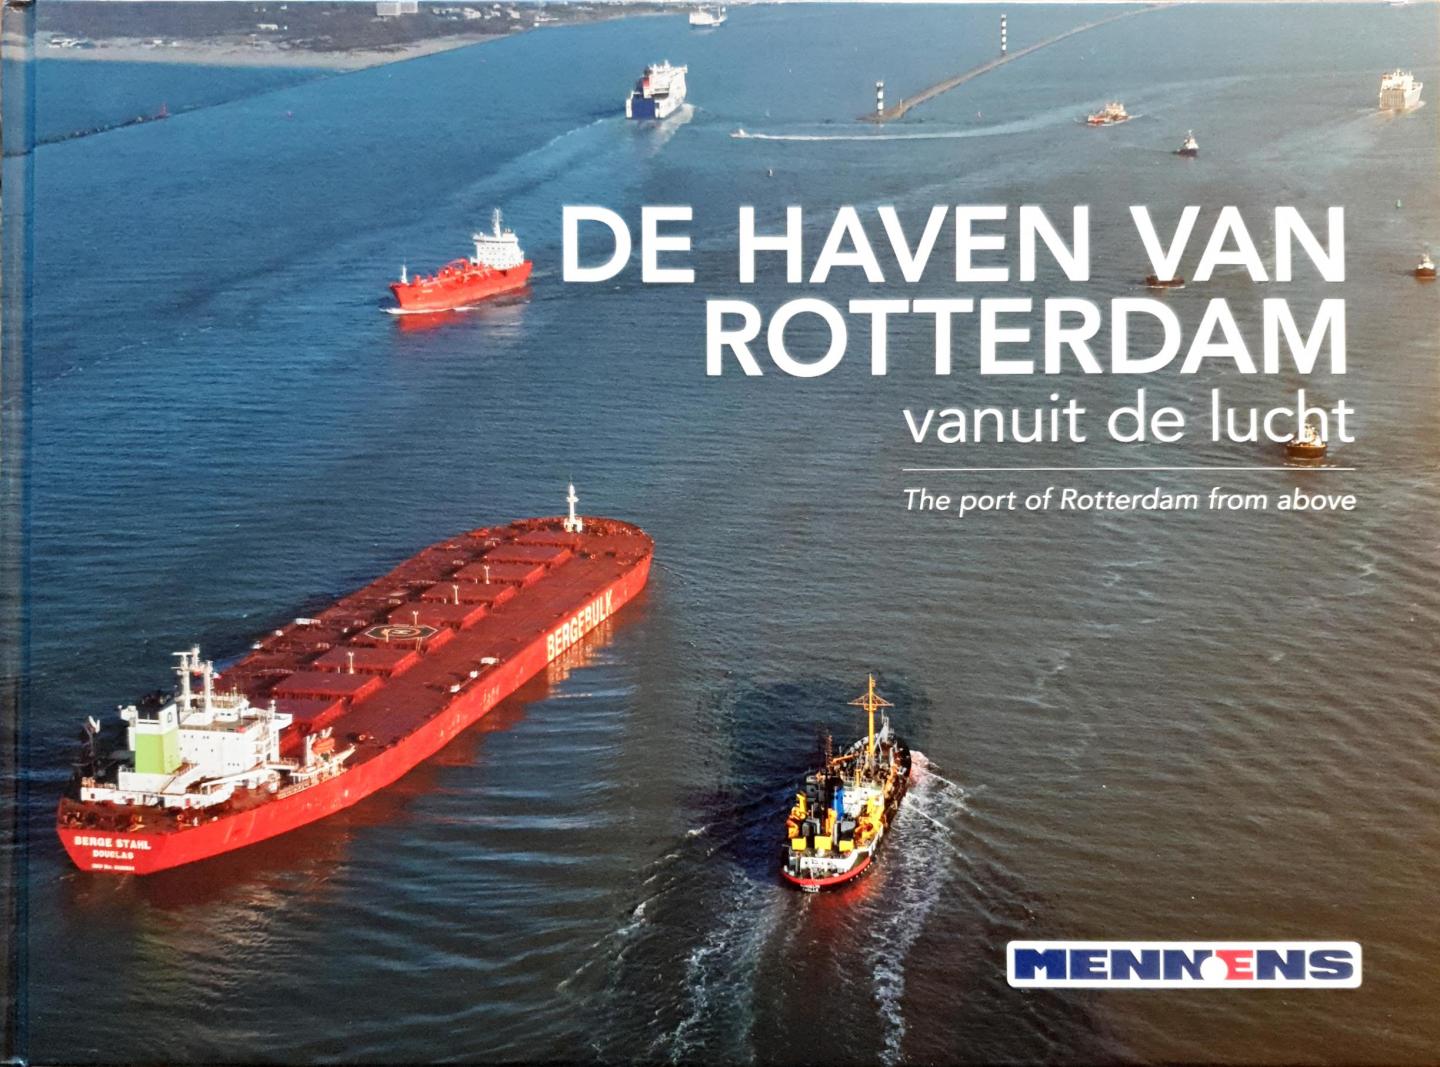  - De Haven van Rotterdam vanuit de lucht